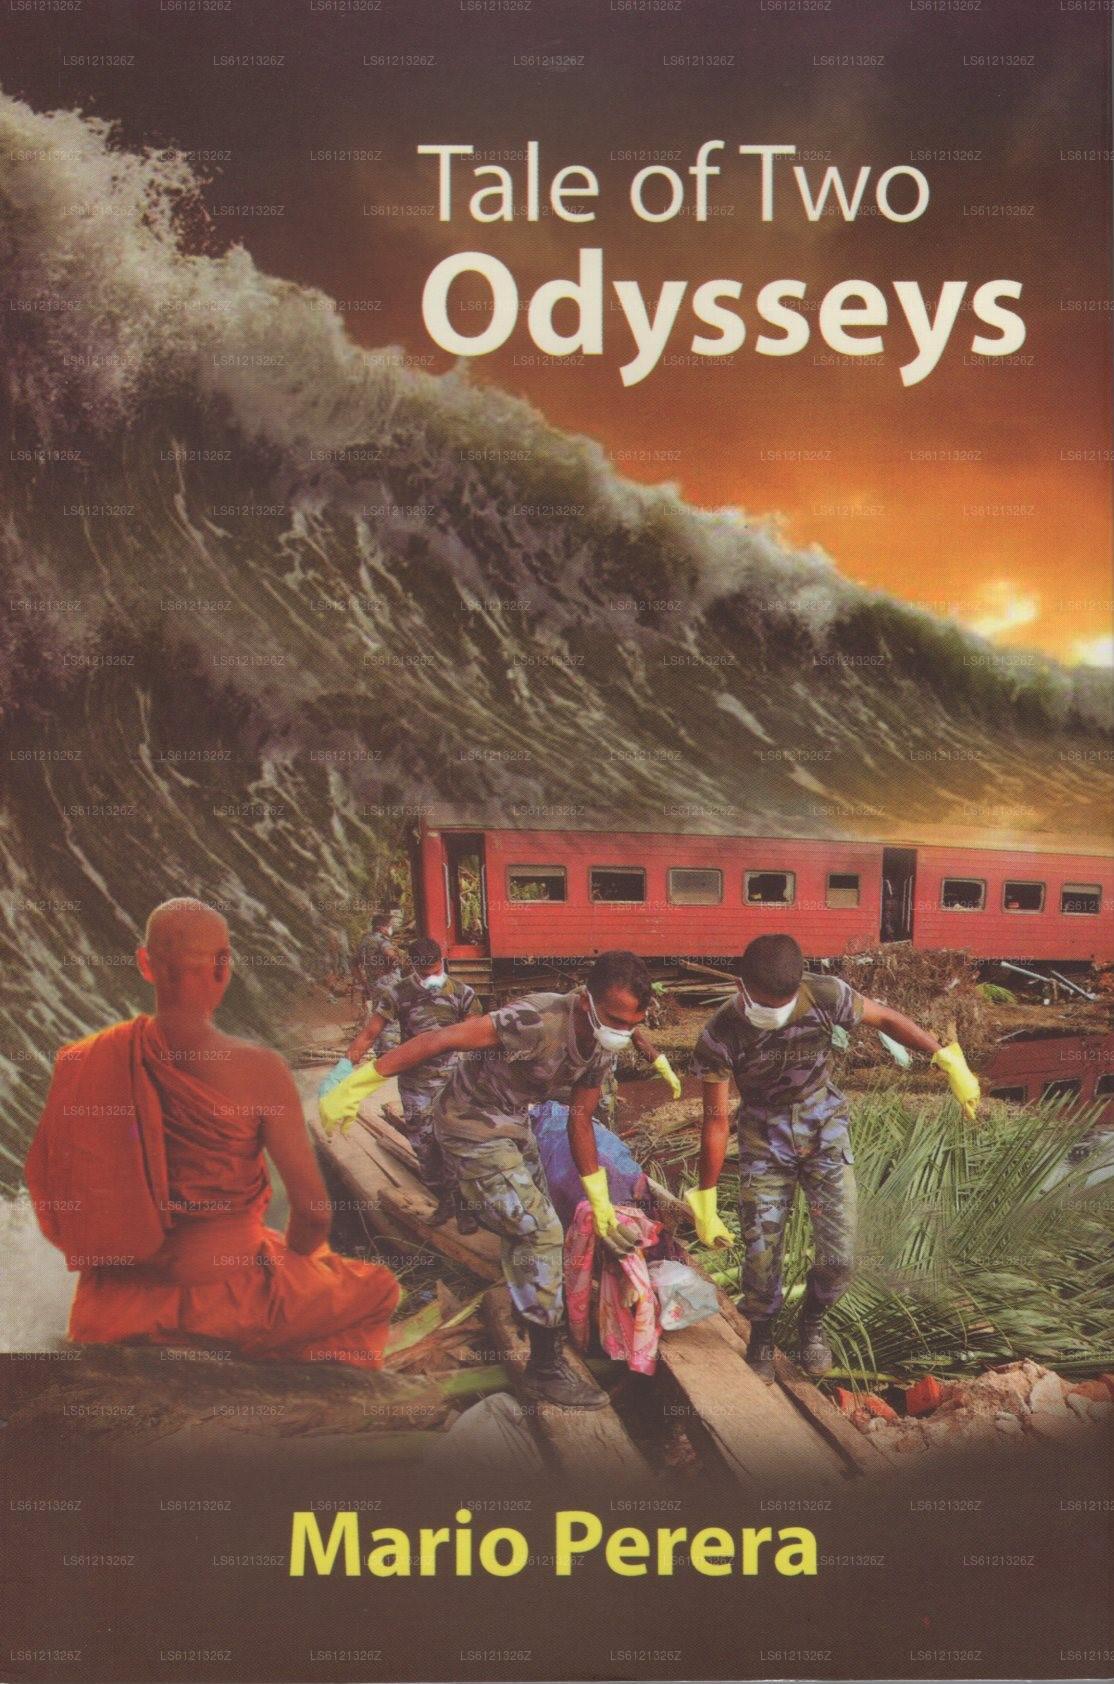 Geschichte zweier Odysseen (Roman)